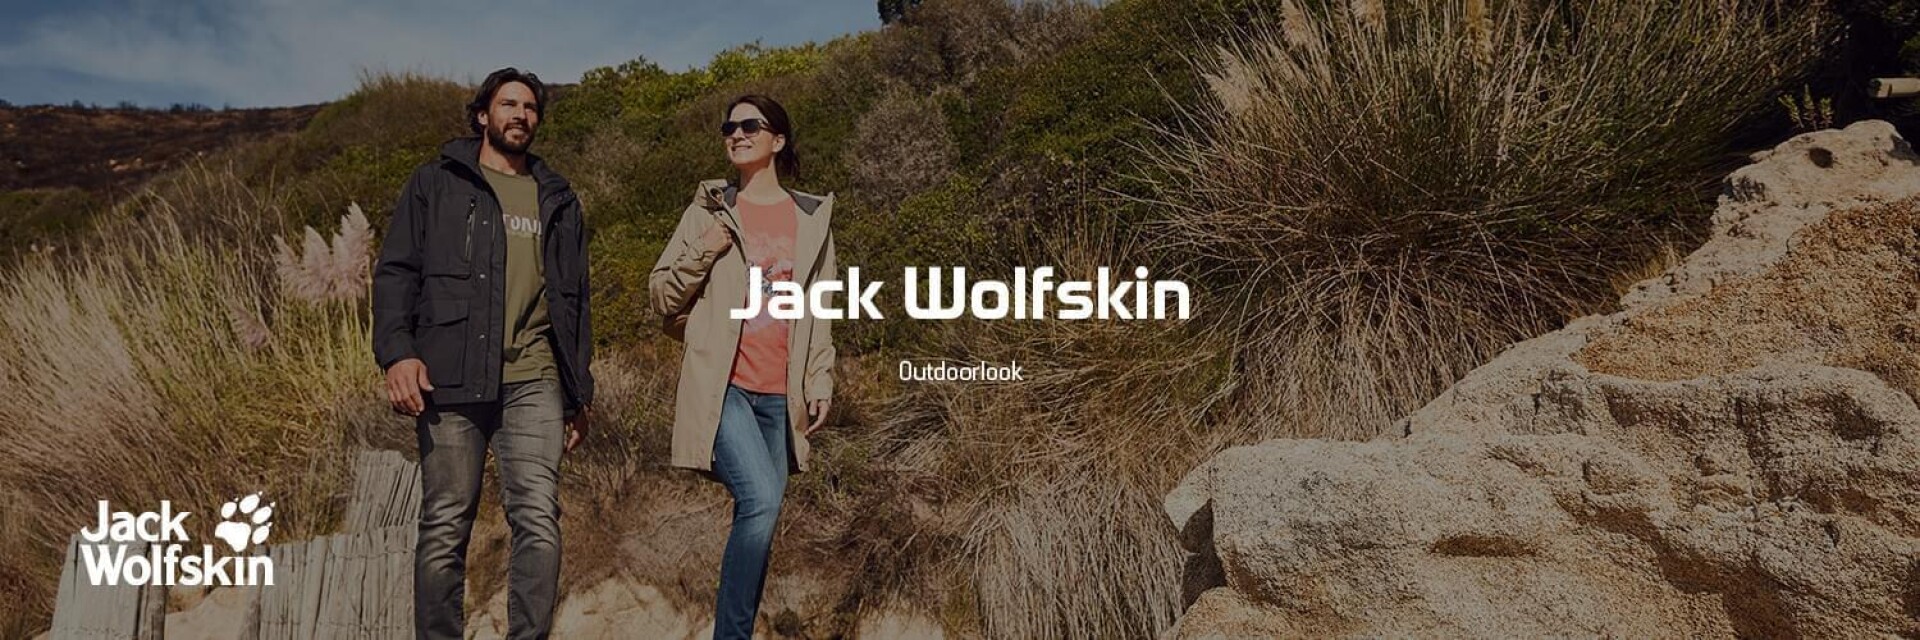 Jack Wolfskin Outdoor Looks